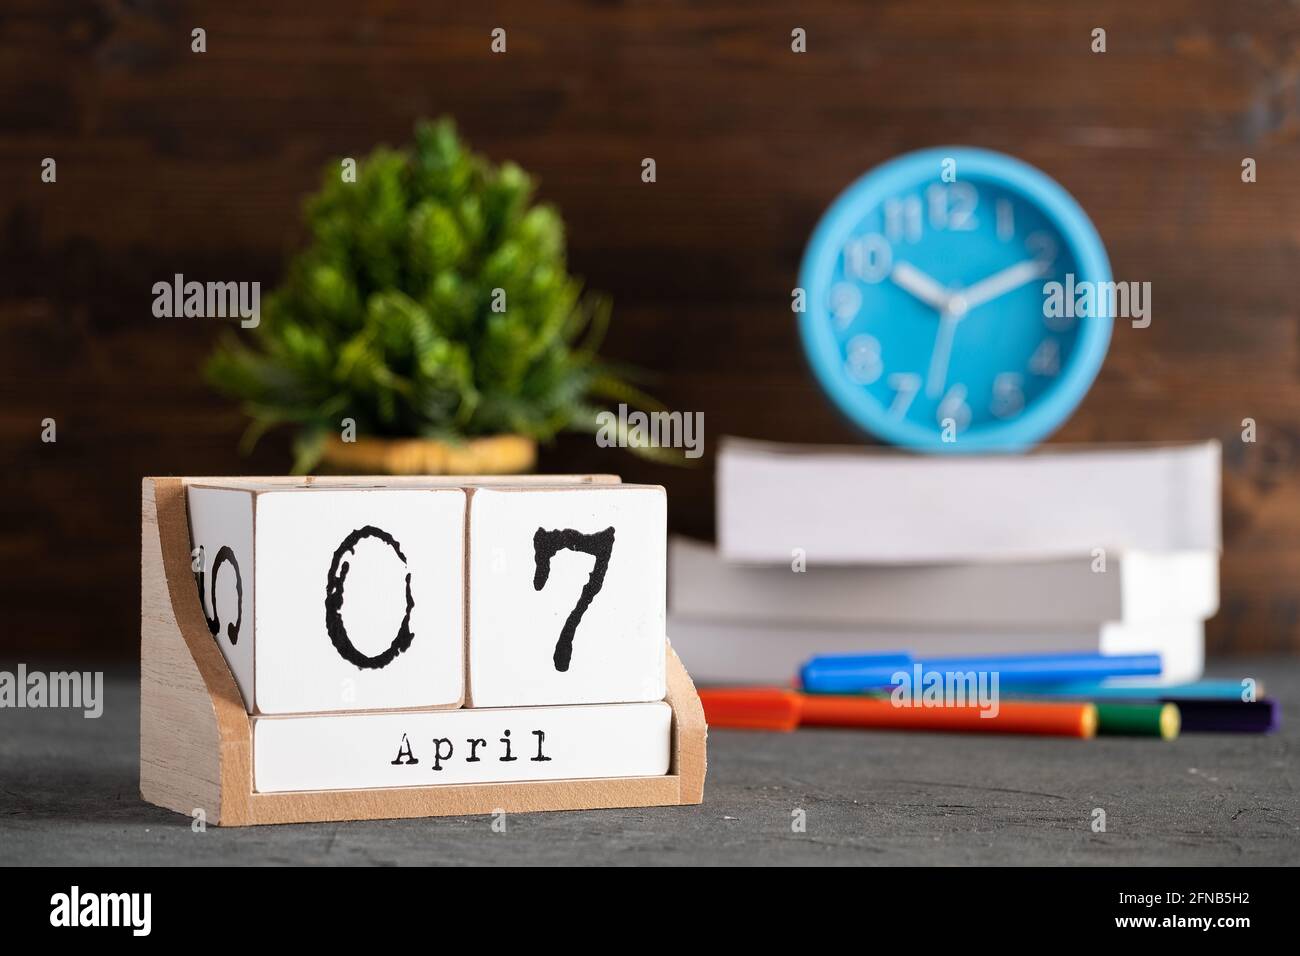 7 avril. Avril 07 calendrier cube en bois avec objets flous sur fond. Banque D'Images